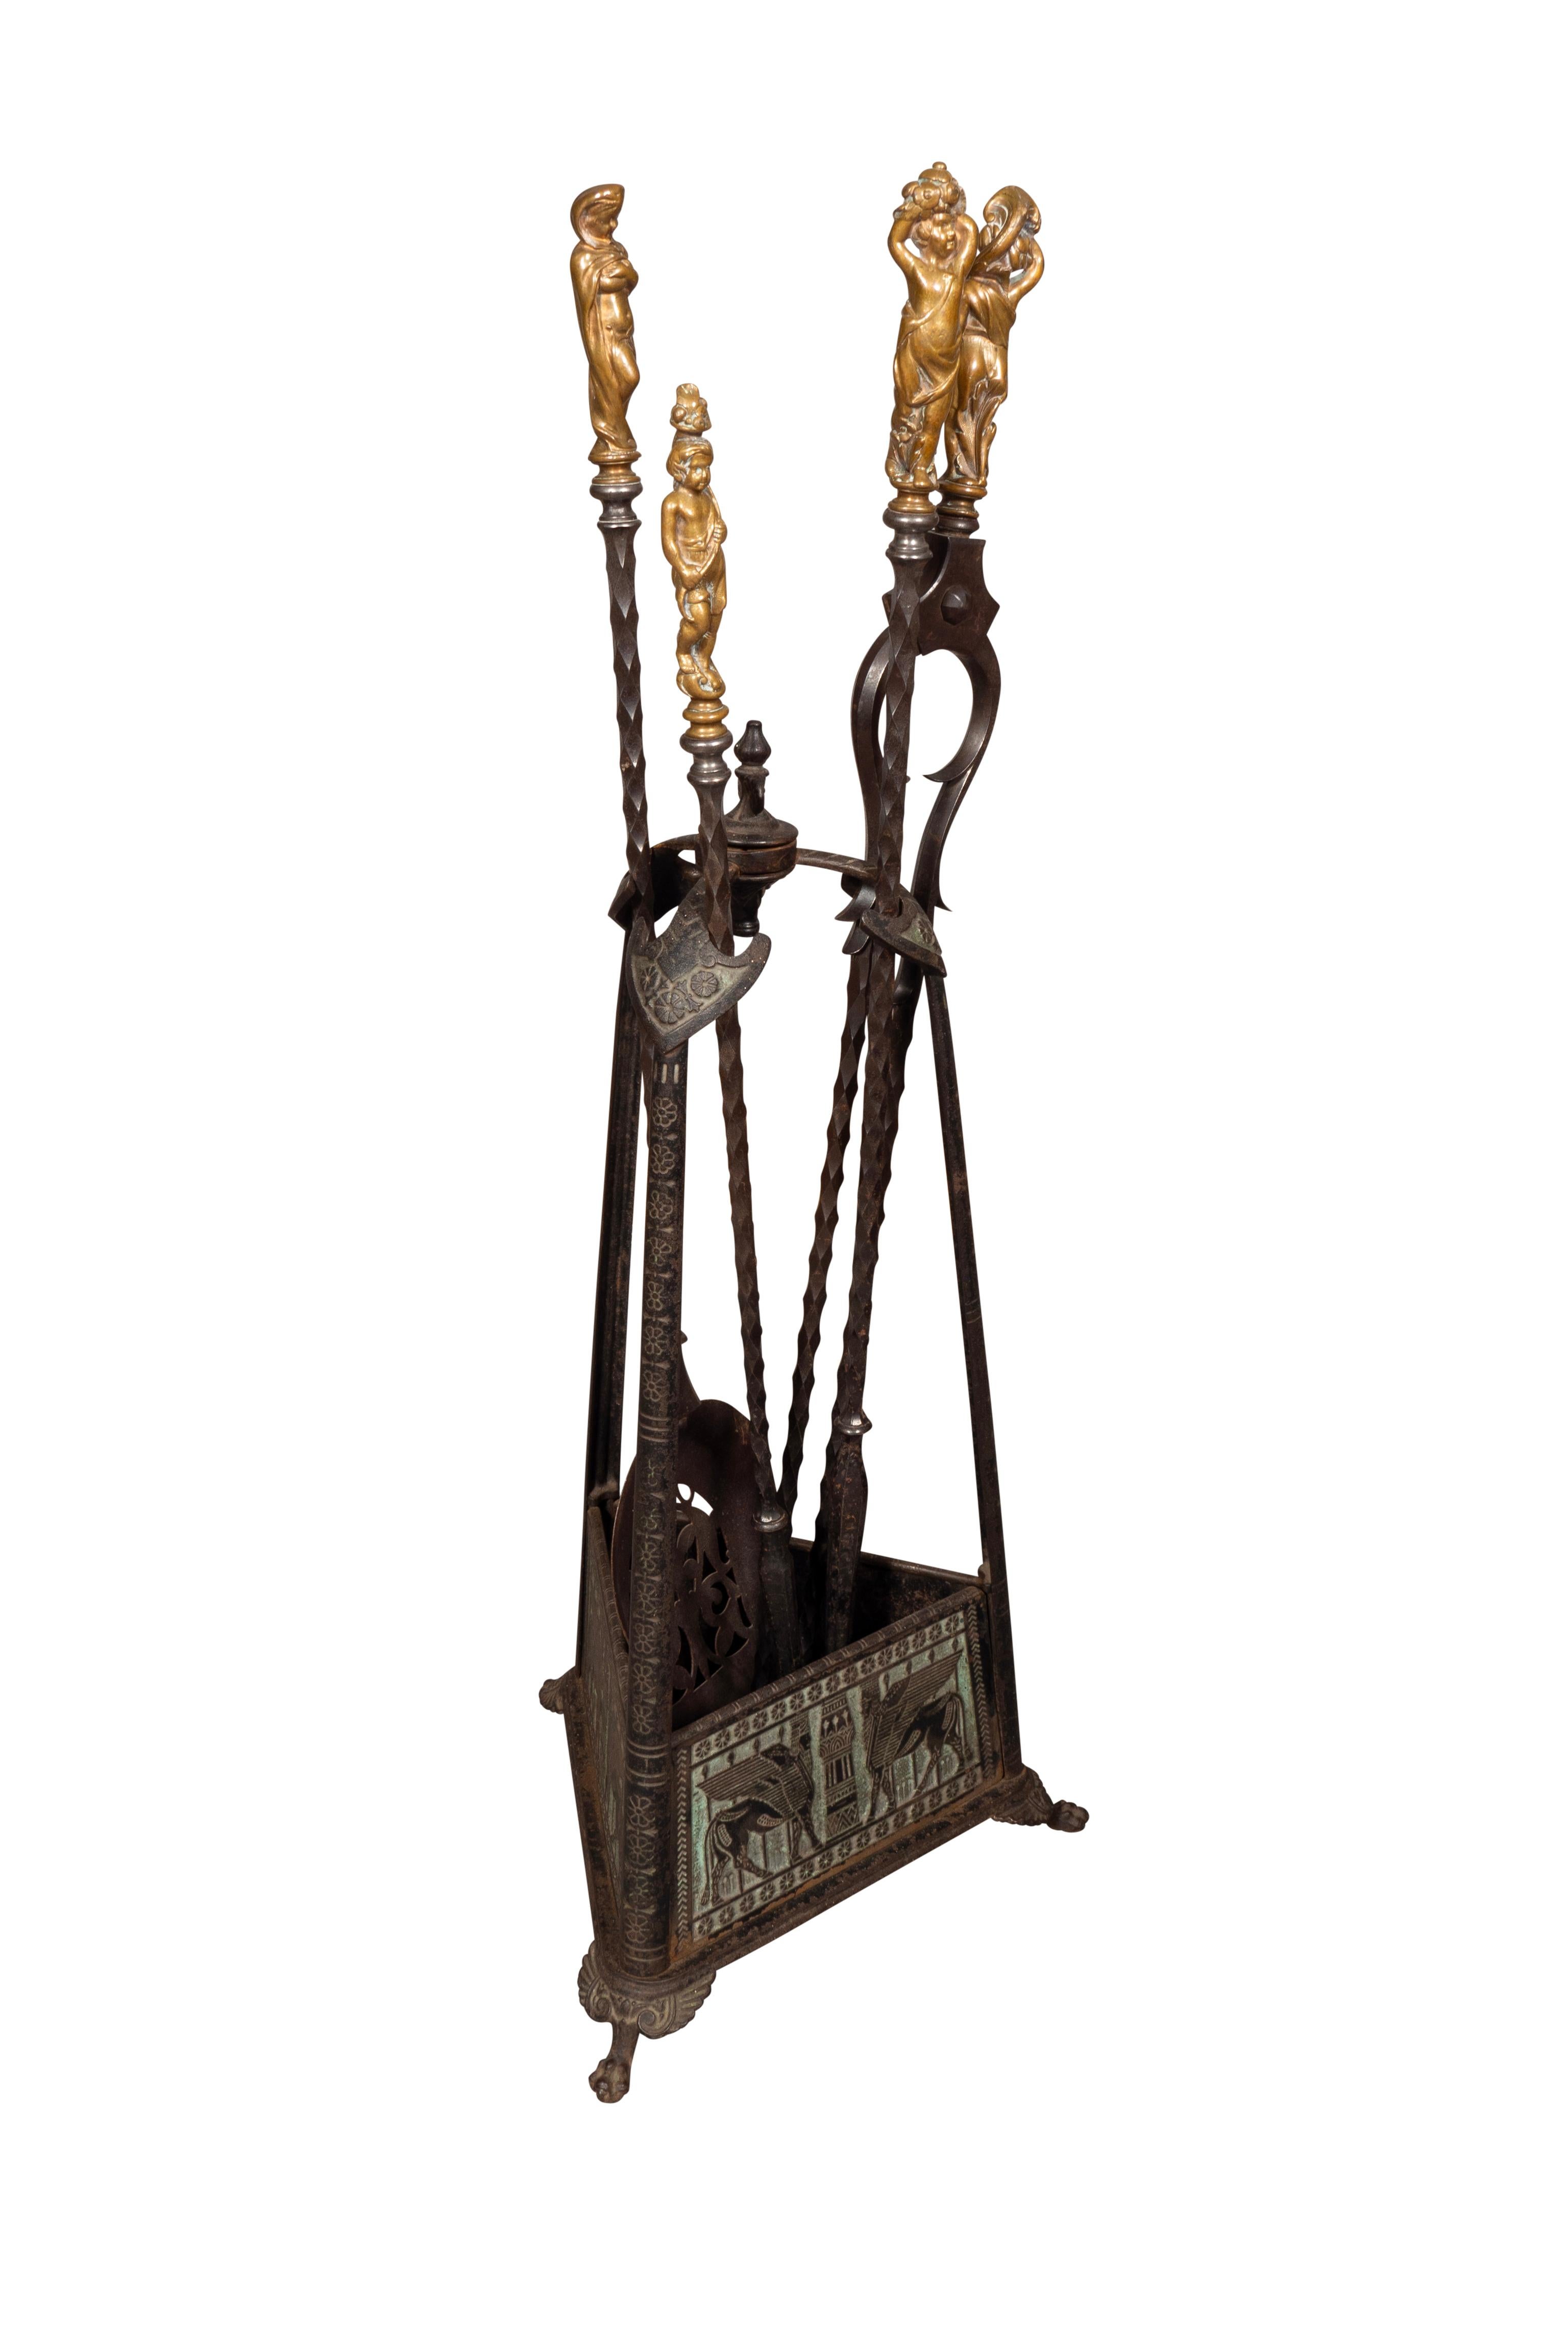 Der Halter mit assyrischem Lamassu-Dekor. Die Werkzeuge sind im Renaissancestil gehalten und mit figuralen Griffen versehen. Bestehend aus zwei Schürhaken, einer Schaufel und einer Zange.